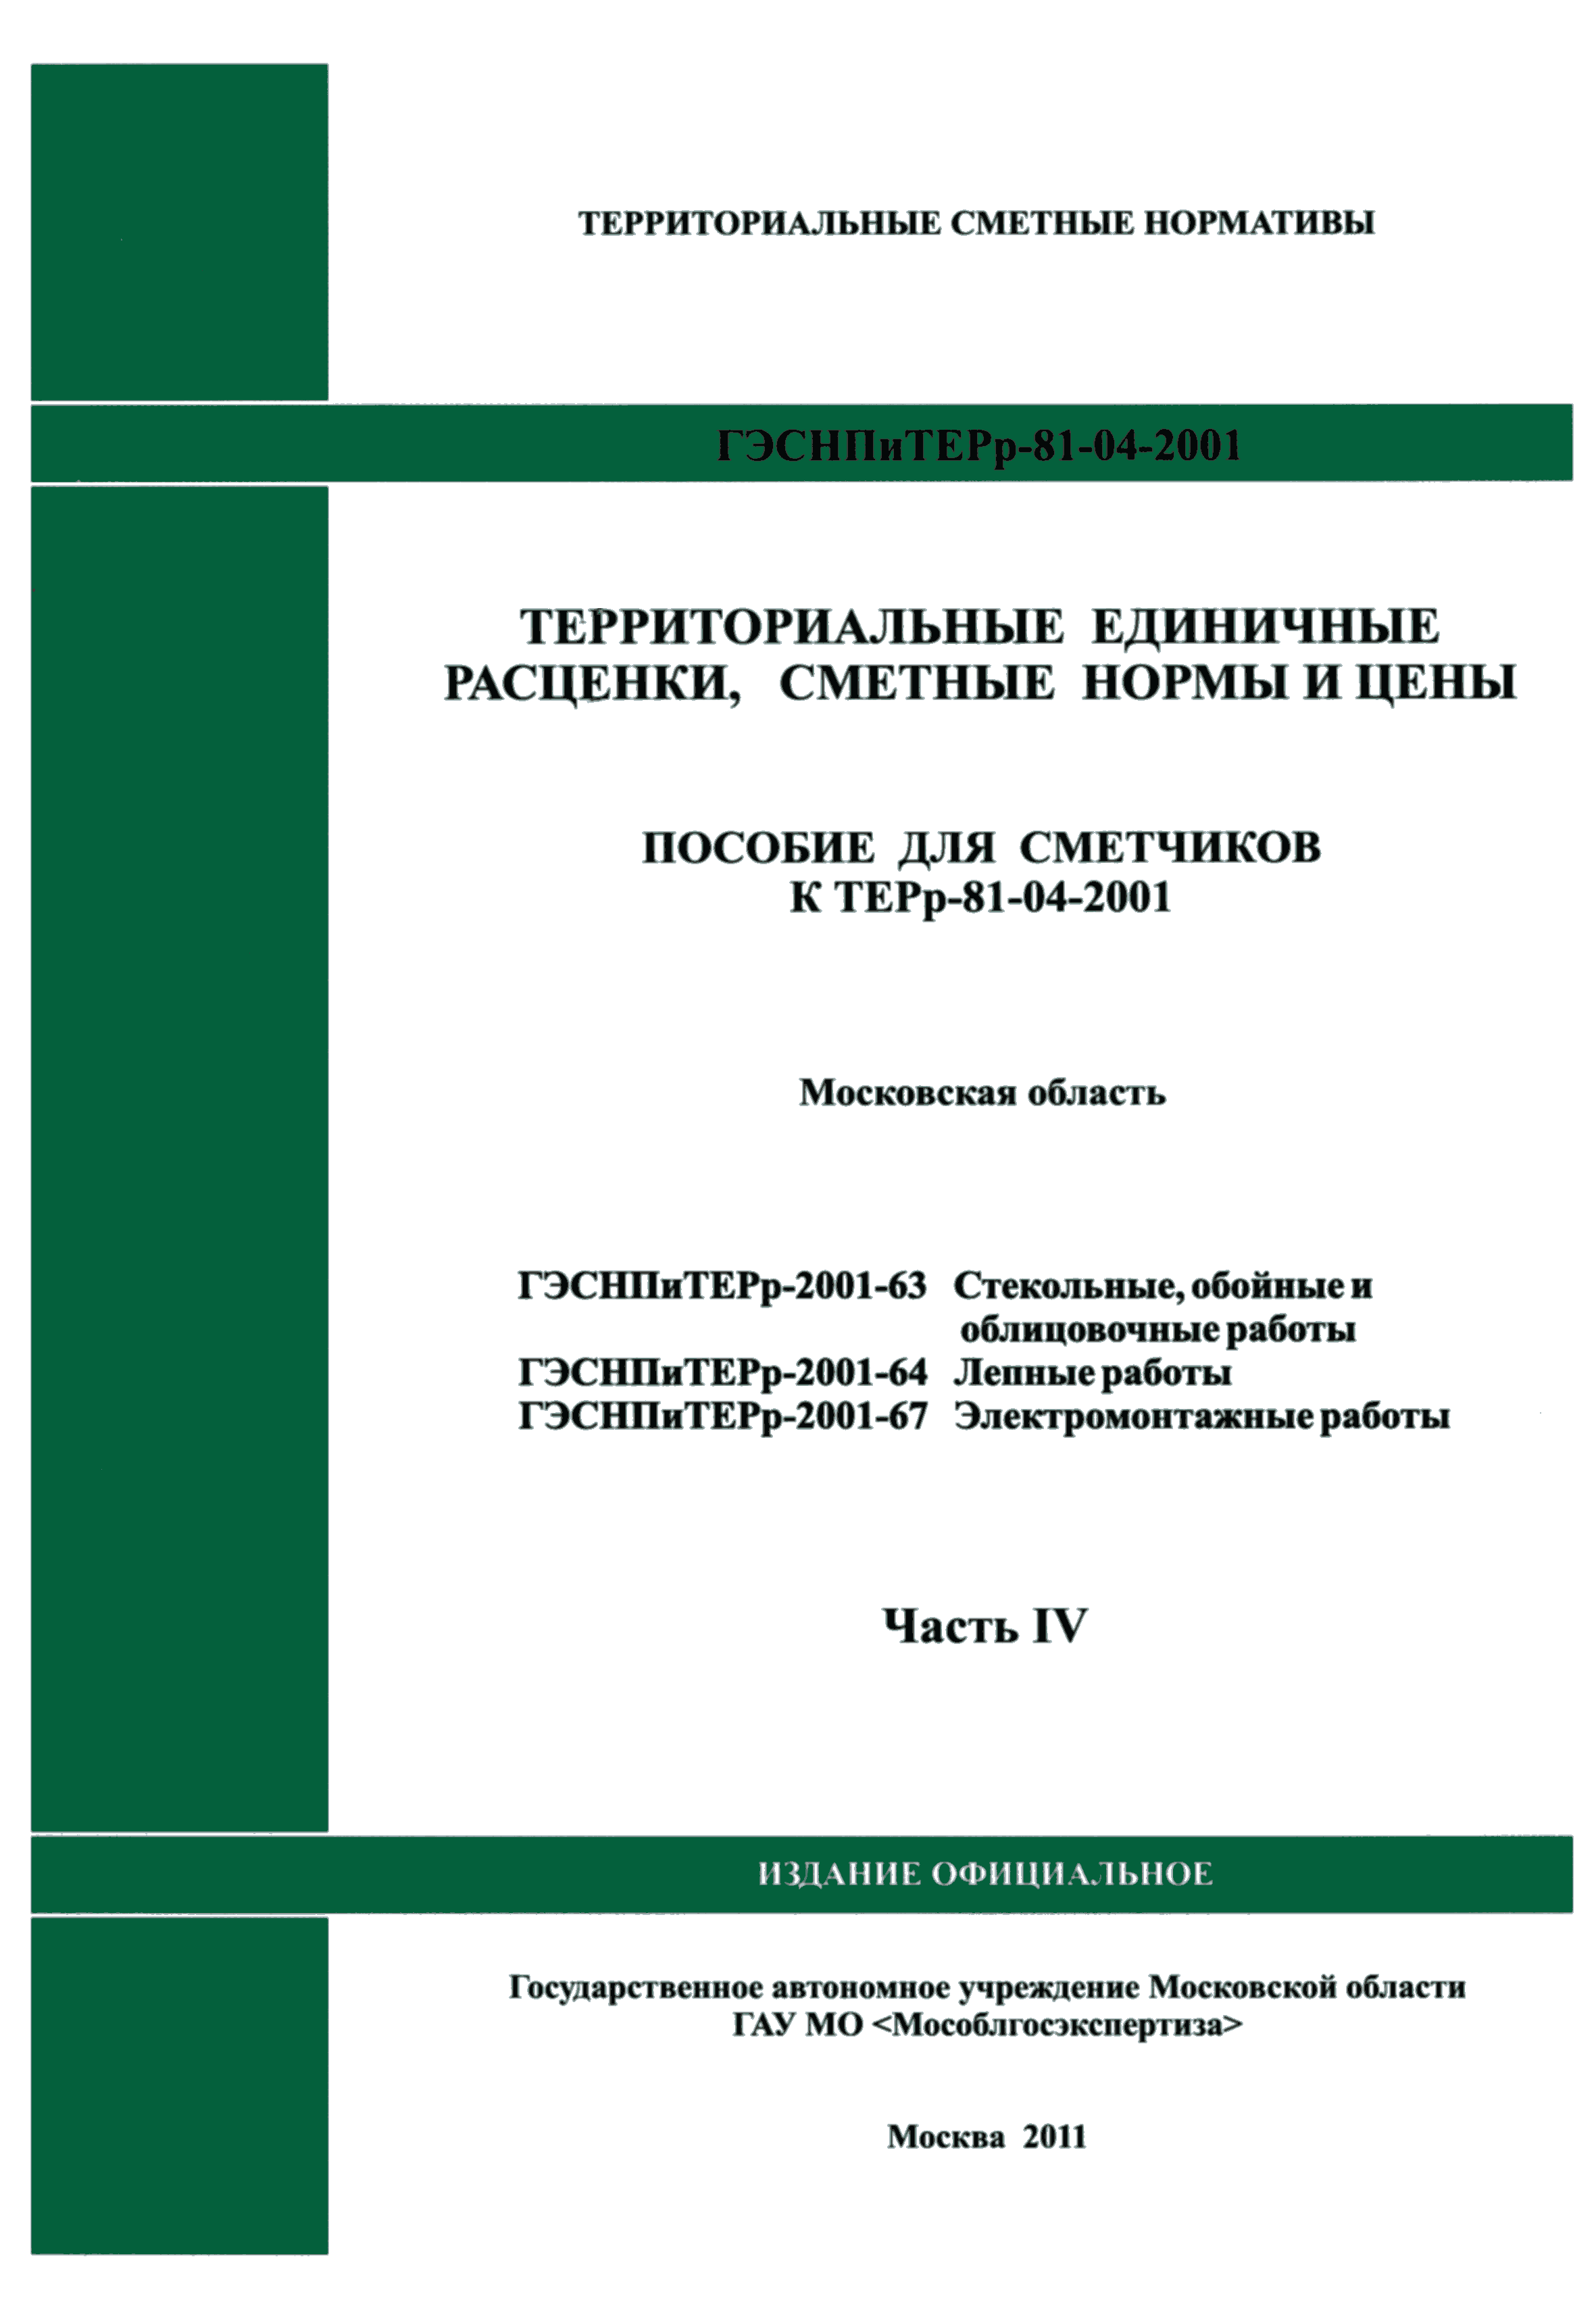 ГЭСНПиТЕРр 2001-64 Московской области